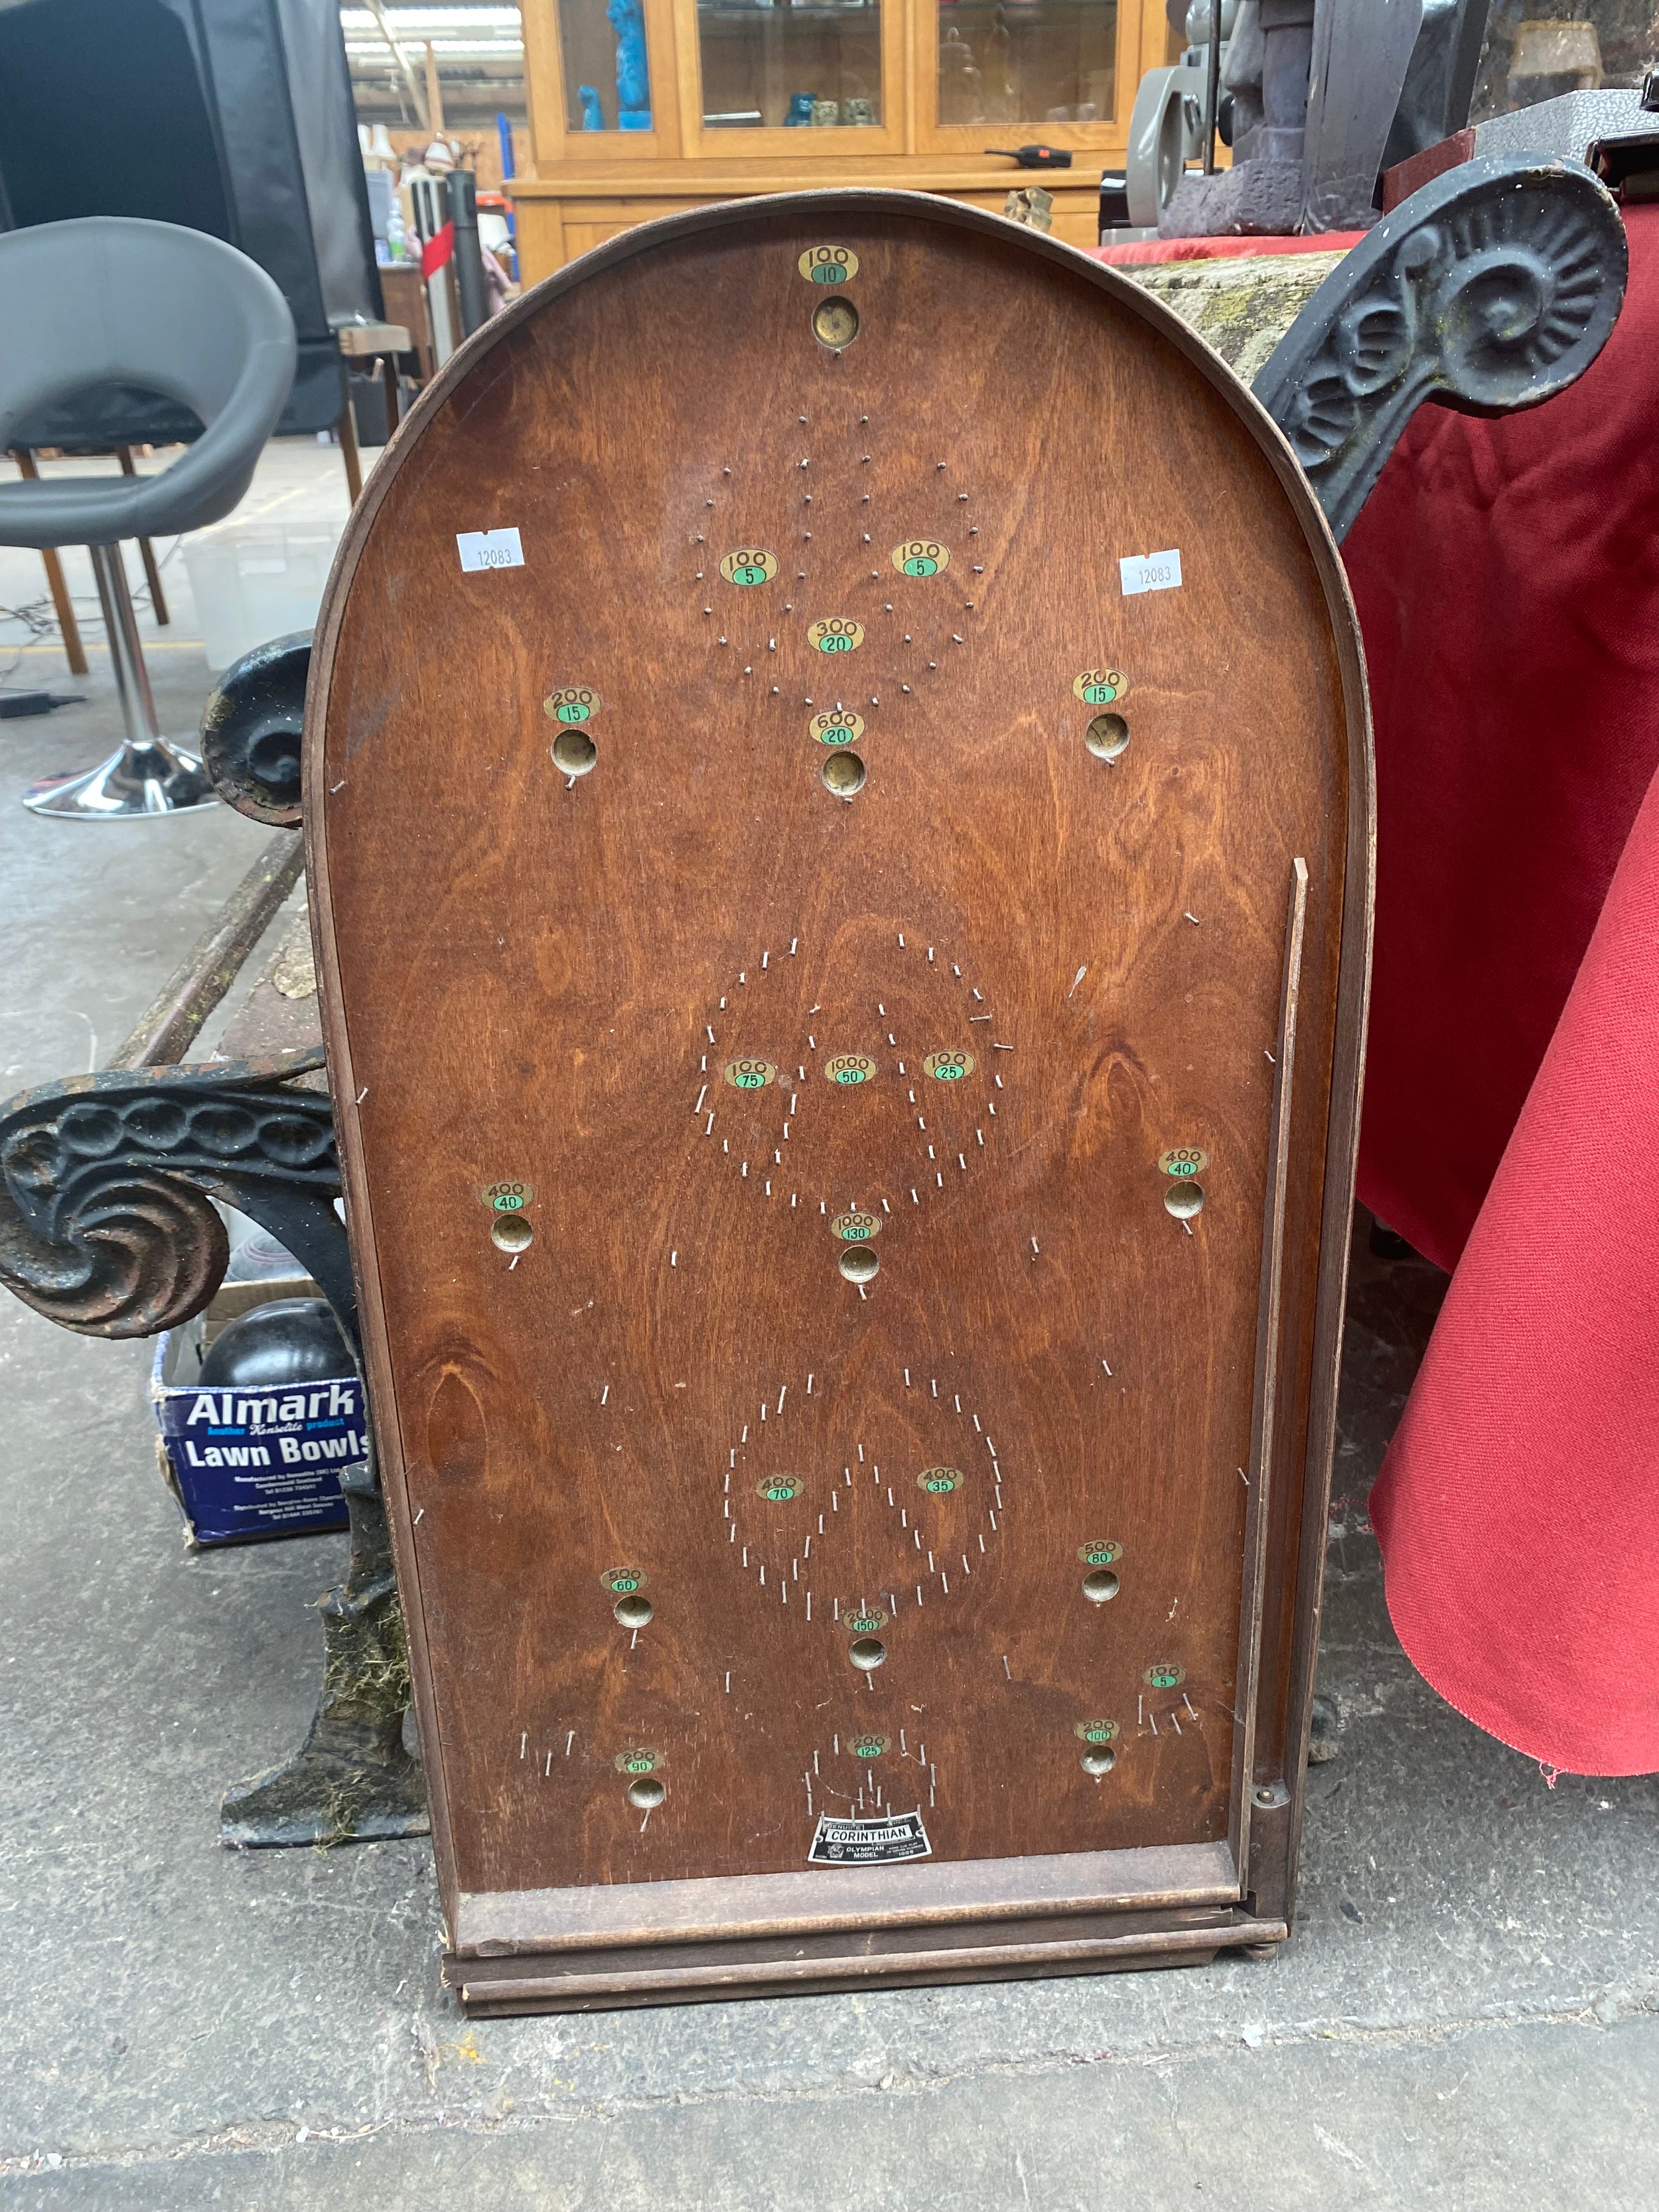 Vintage Bagatelle board